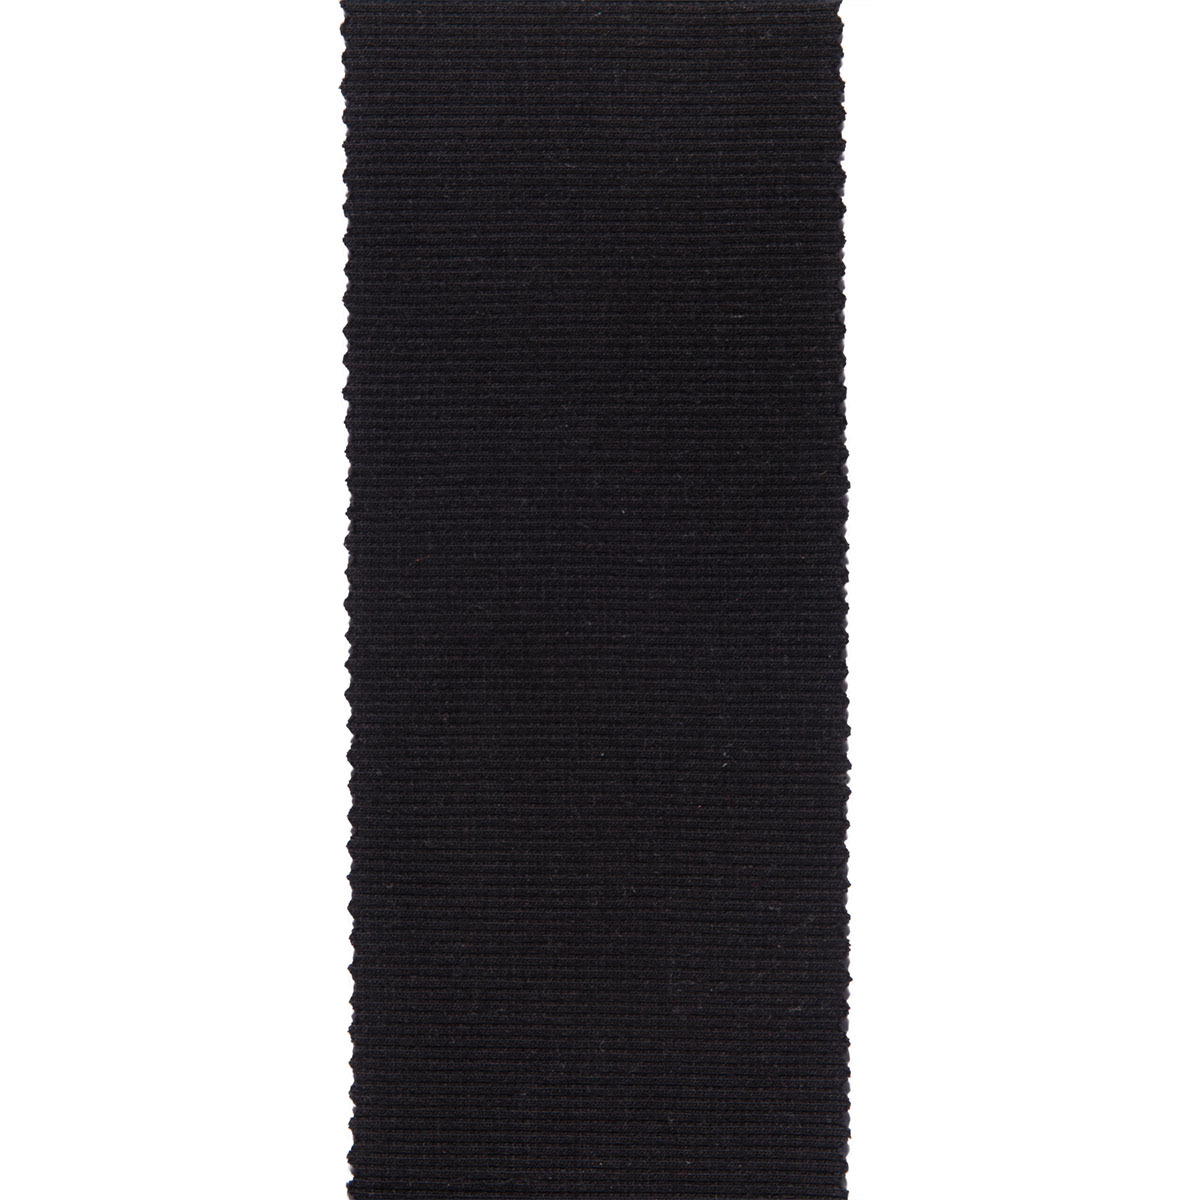 Dekostoff Gisele schwarz in 40cm Breite (METERWARE) Baumwollstoff Stoff aus 97% Baumwolle